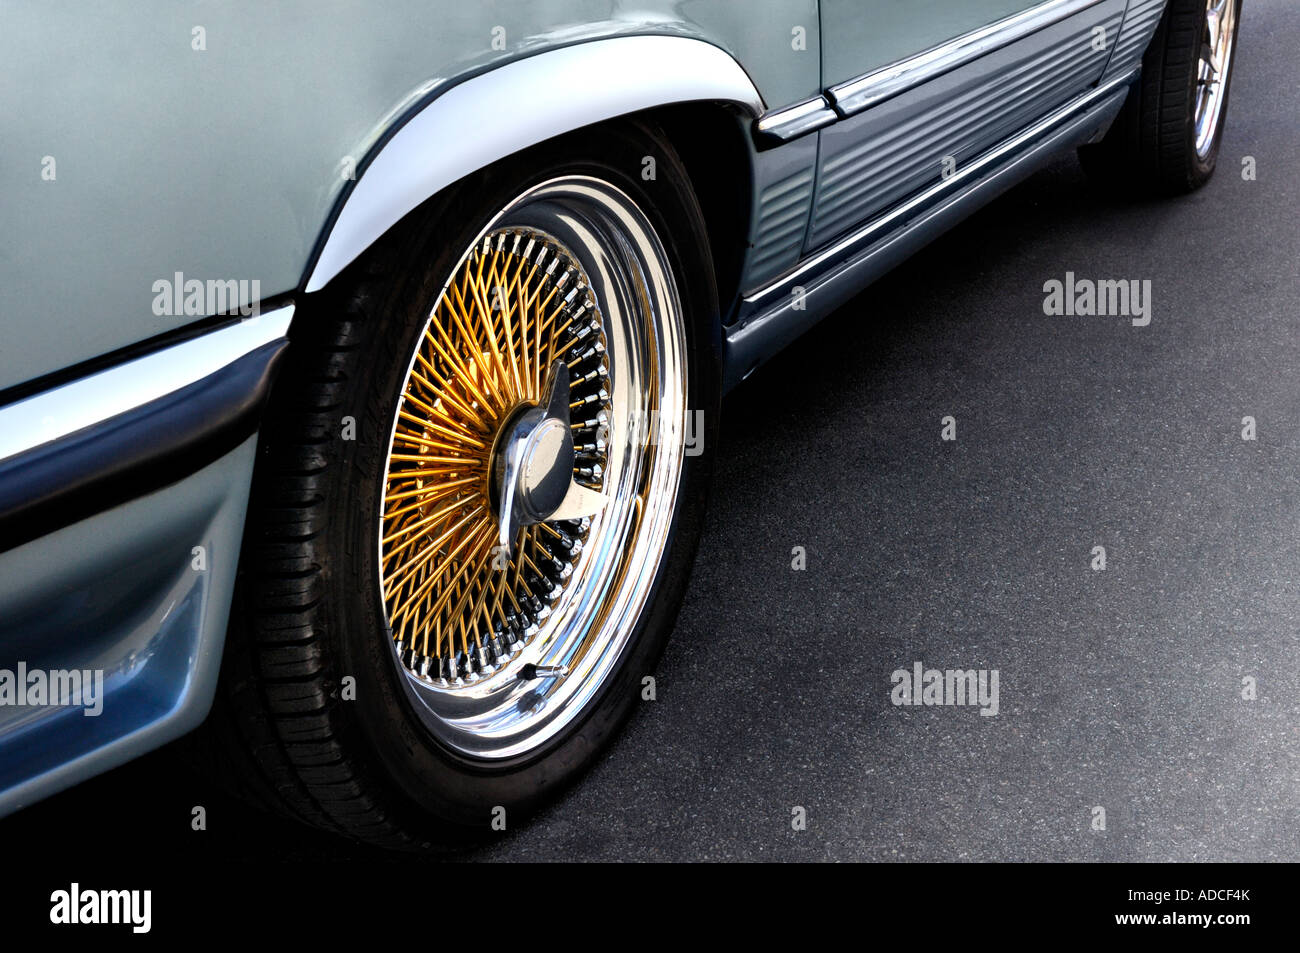 Classic car wheels and shiny rims Stock Photo